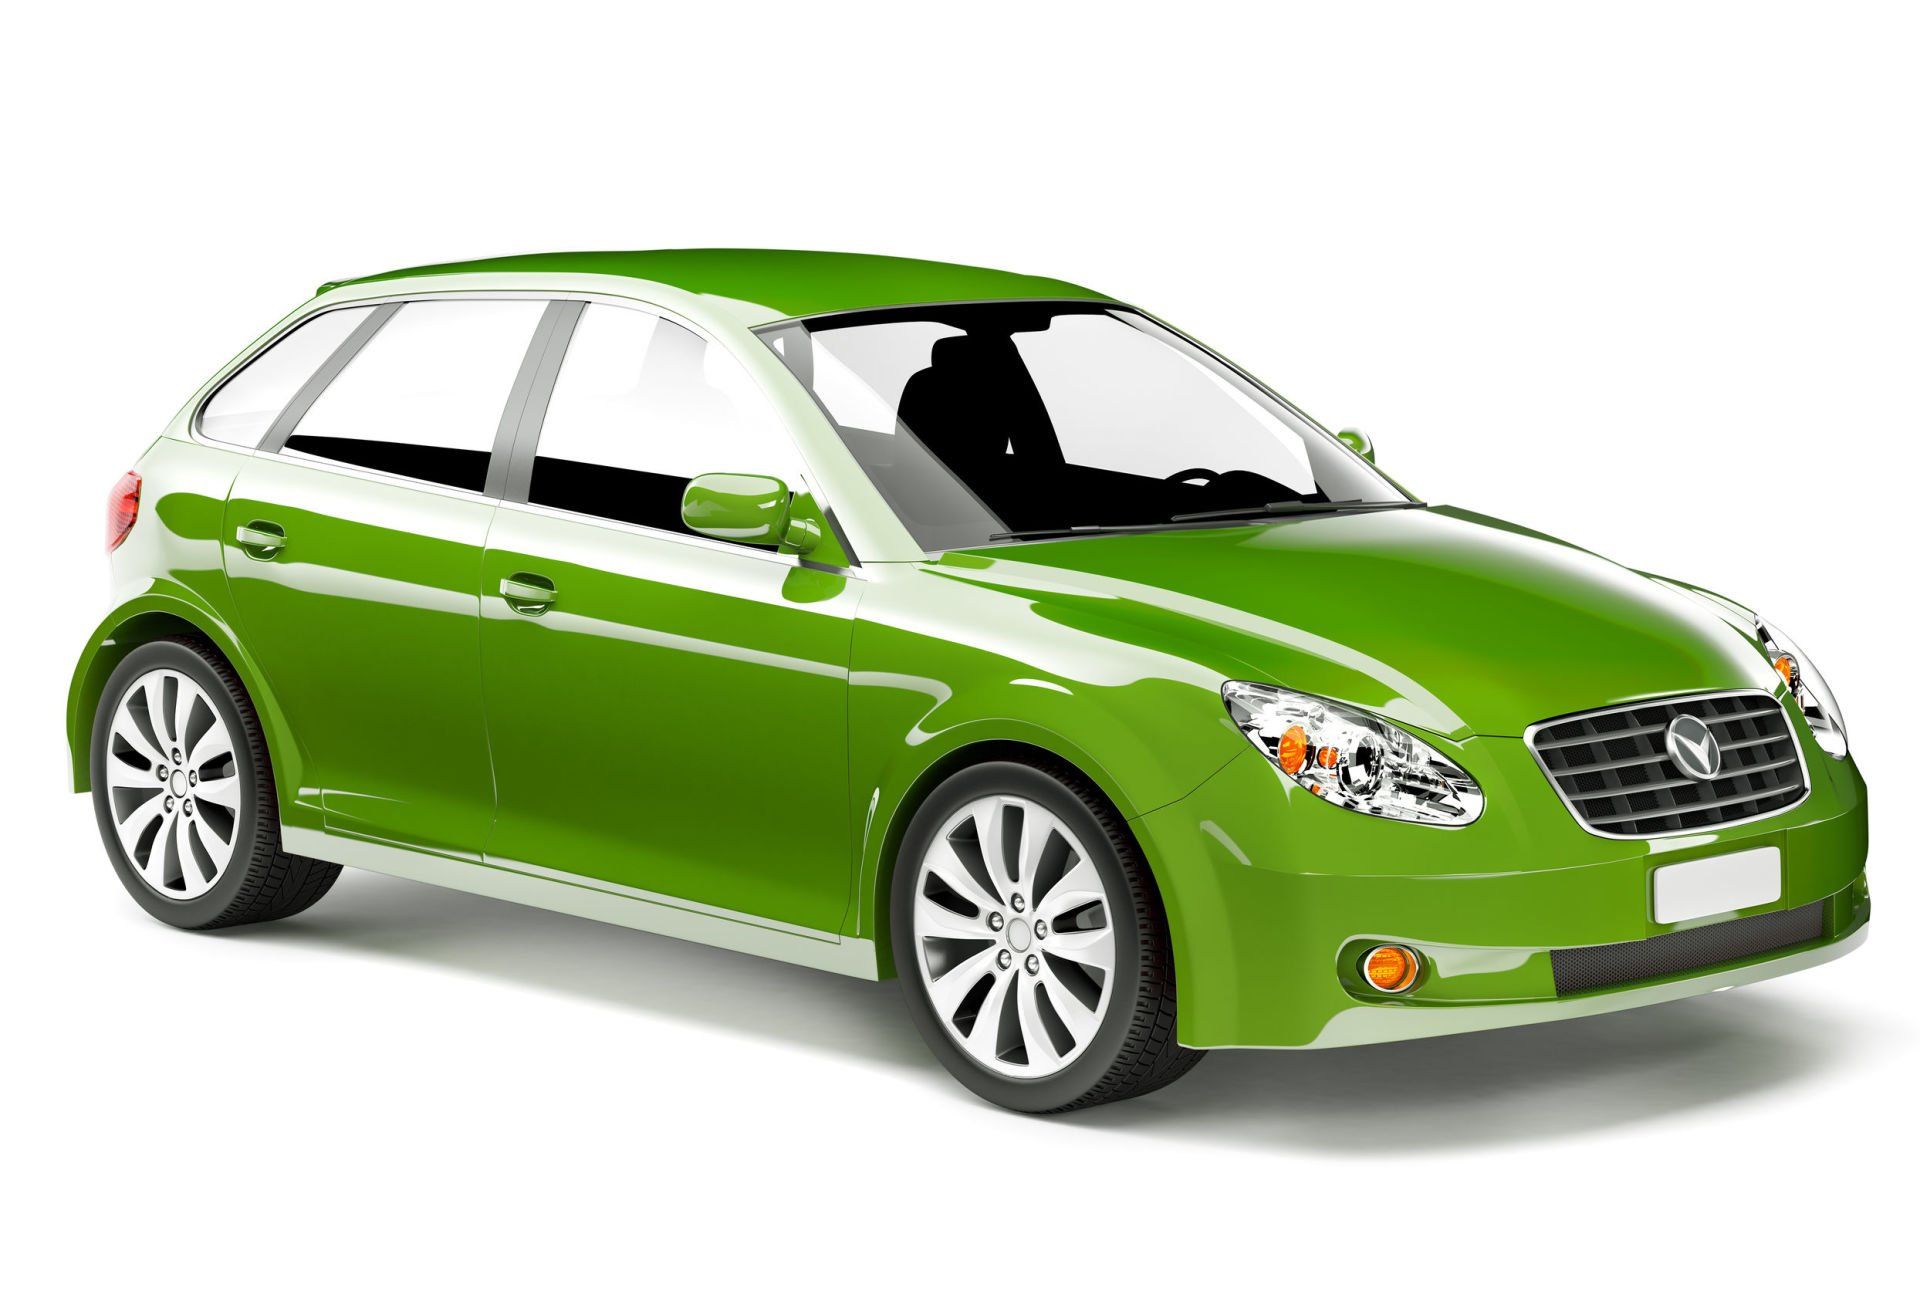 31315089_m+green+car-1920w